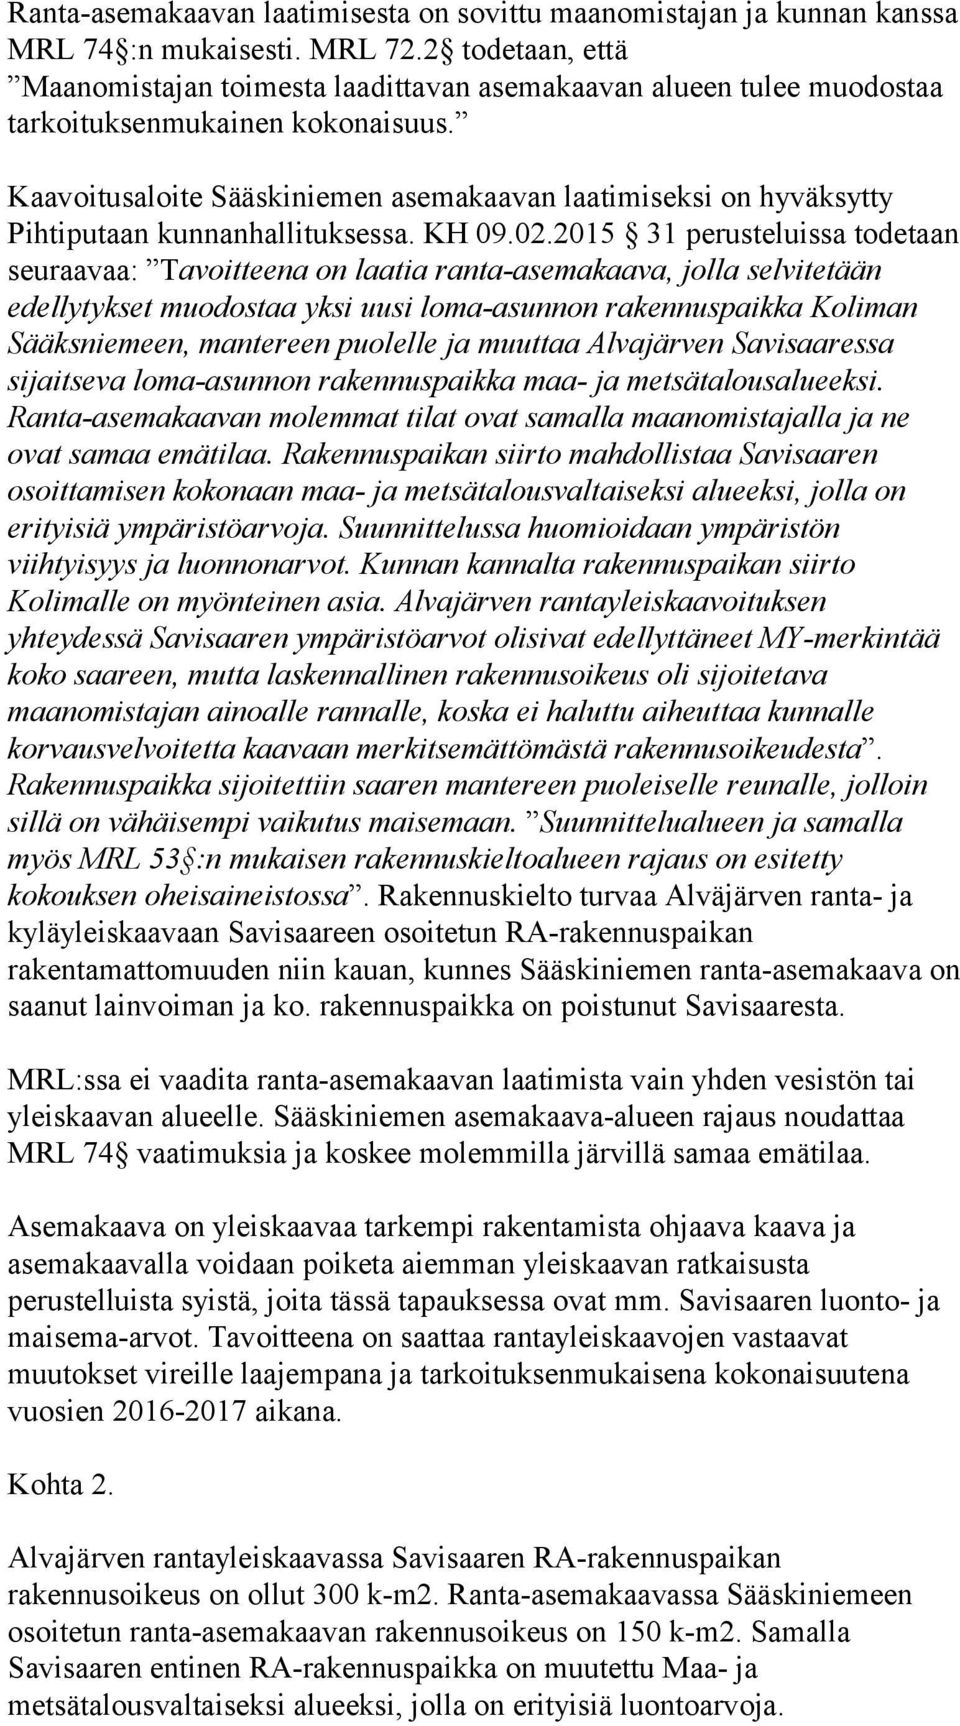 Kaavoitusaloite Sääskiniemen asemakaavan laatimiseksi on hyväksytty Pihtiputaan kunnanhallituksessa. KH 09.02.